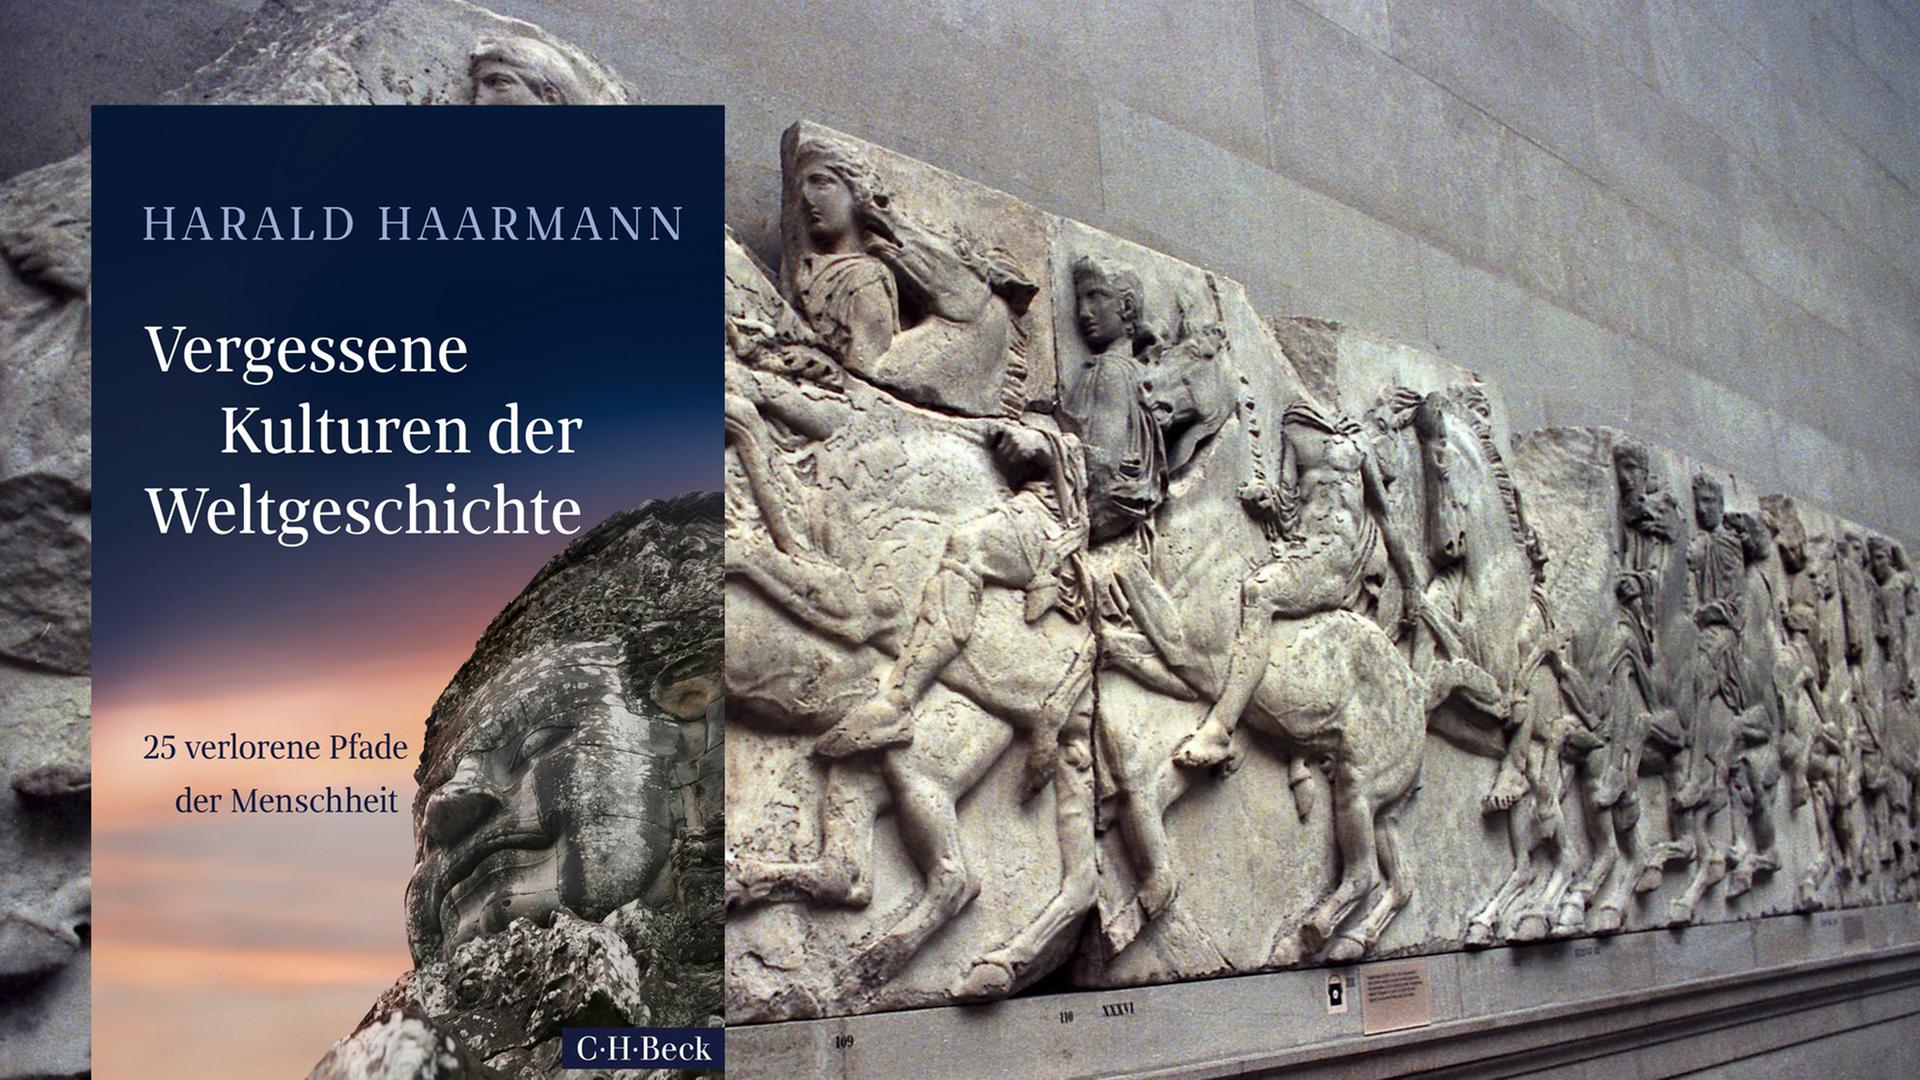 Cover von Harald Haarmanns Sachbuch "Vergessene Kulturen der Weltgeschichte".